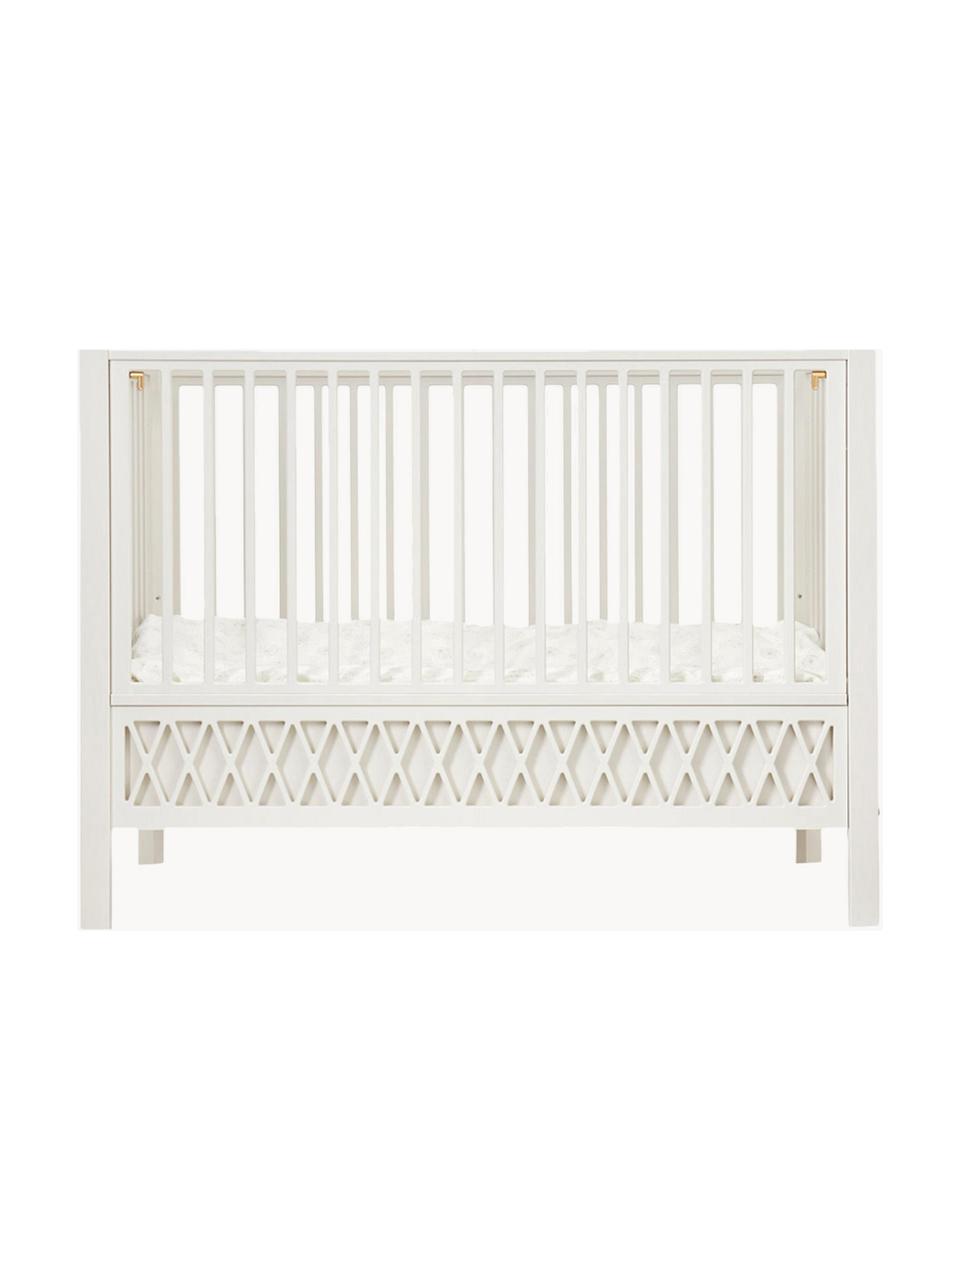 Höhenverstellbares Baby-Bett Harlequin, 60 x 120 cm, Kiefernholz, Mitteldichte Holzfaserplatte (MDF), lackiert mit VOC-freier Farbe und FSC-zertifiziert, Birkenholz, Off White lackiert, B 60 x L 120 cm